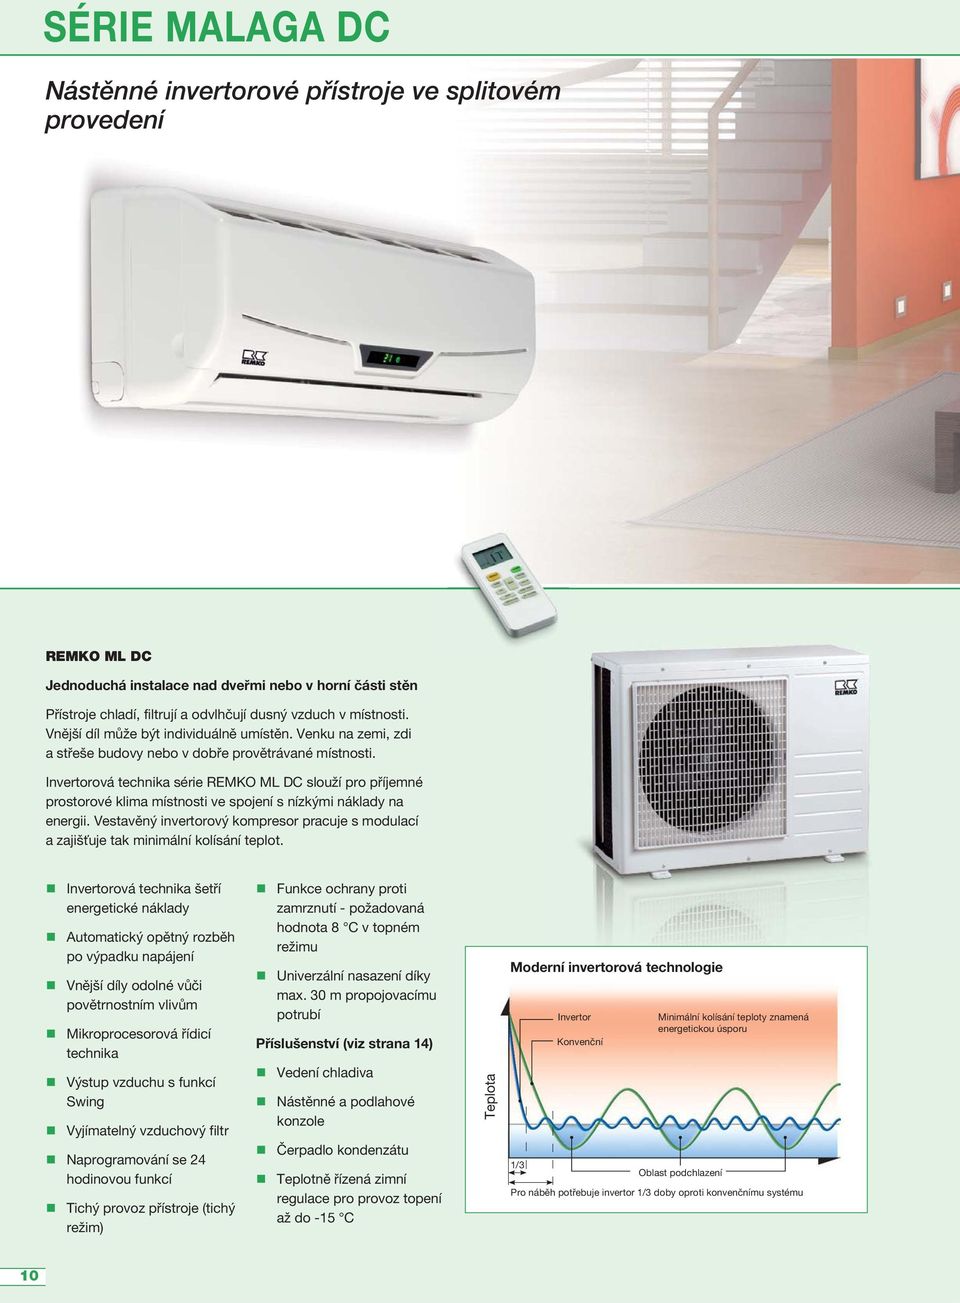 Invertorová technika série REMKO ML DC slouží pro příjemné prostorové klima místnosti ve spojení s nízkými náklady na energii.